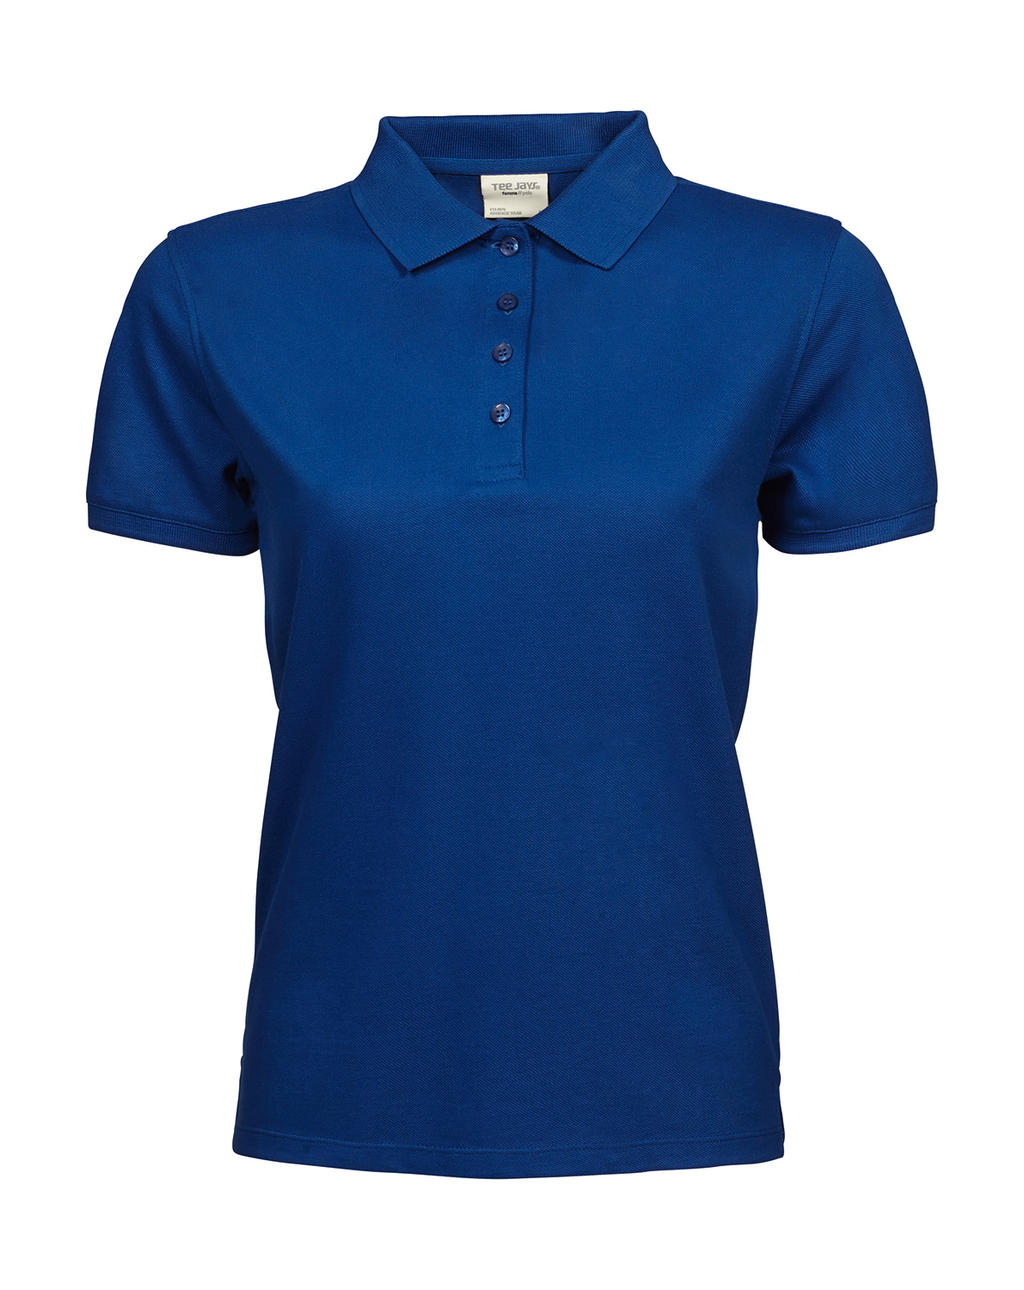 Tee Jays Damen Polo Shirt Kragen Basic Poloshirt T-Shirt T Shirt